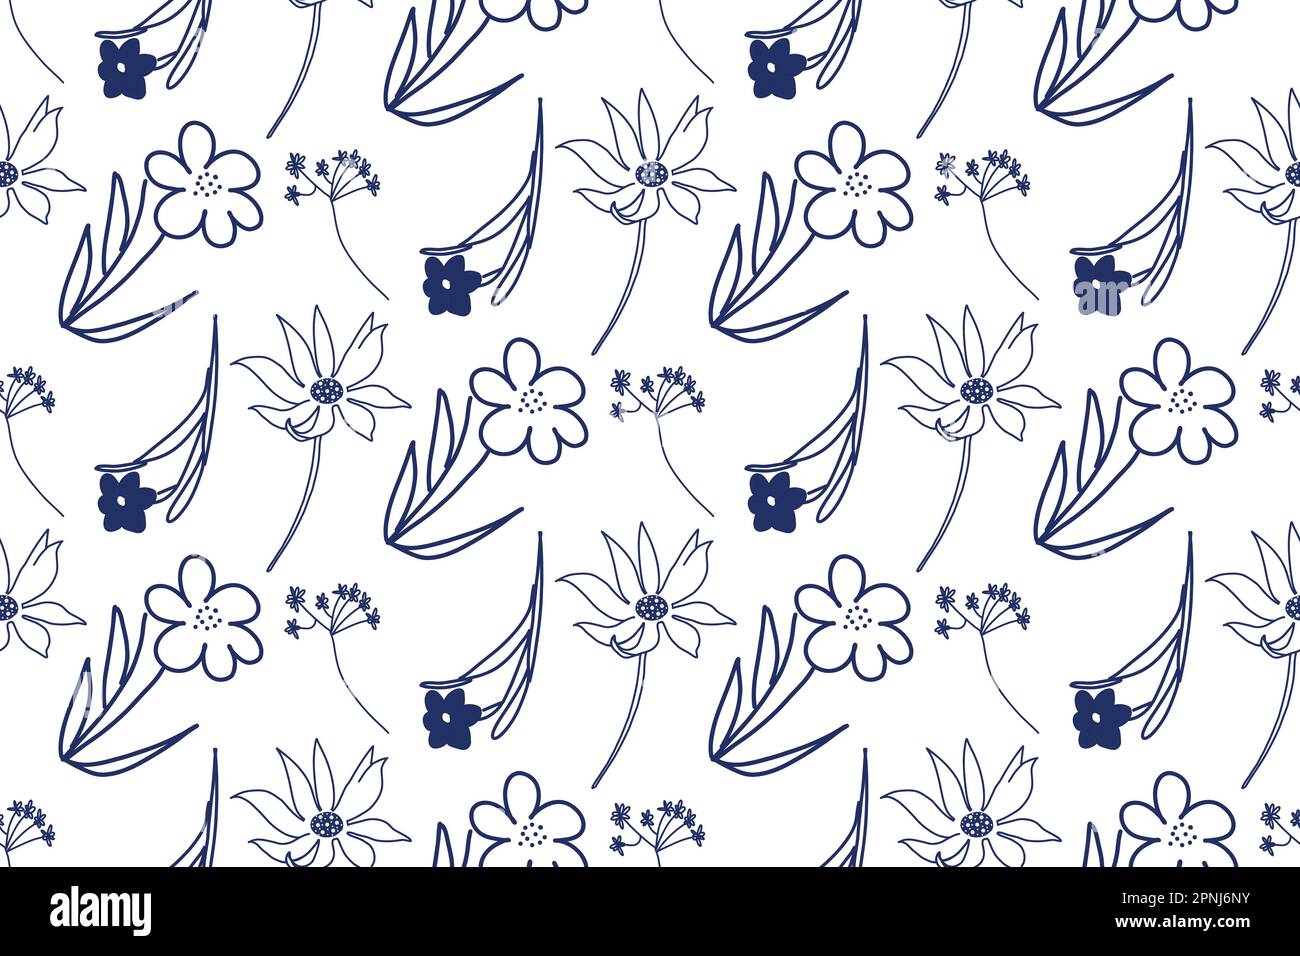 Nahtloses Muster. Blumenmuster auf einer Tablette. Vektorblumen einfacher Formen in Blau auf weißem Hintergrund. Stock Vektor